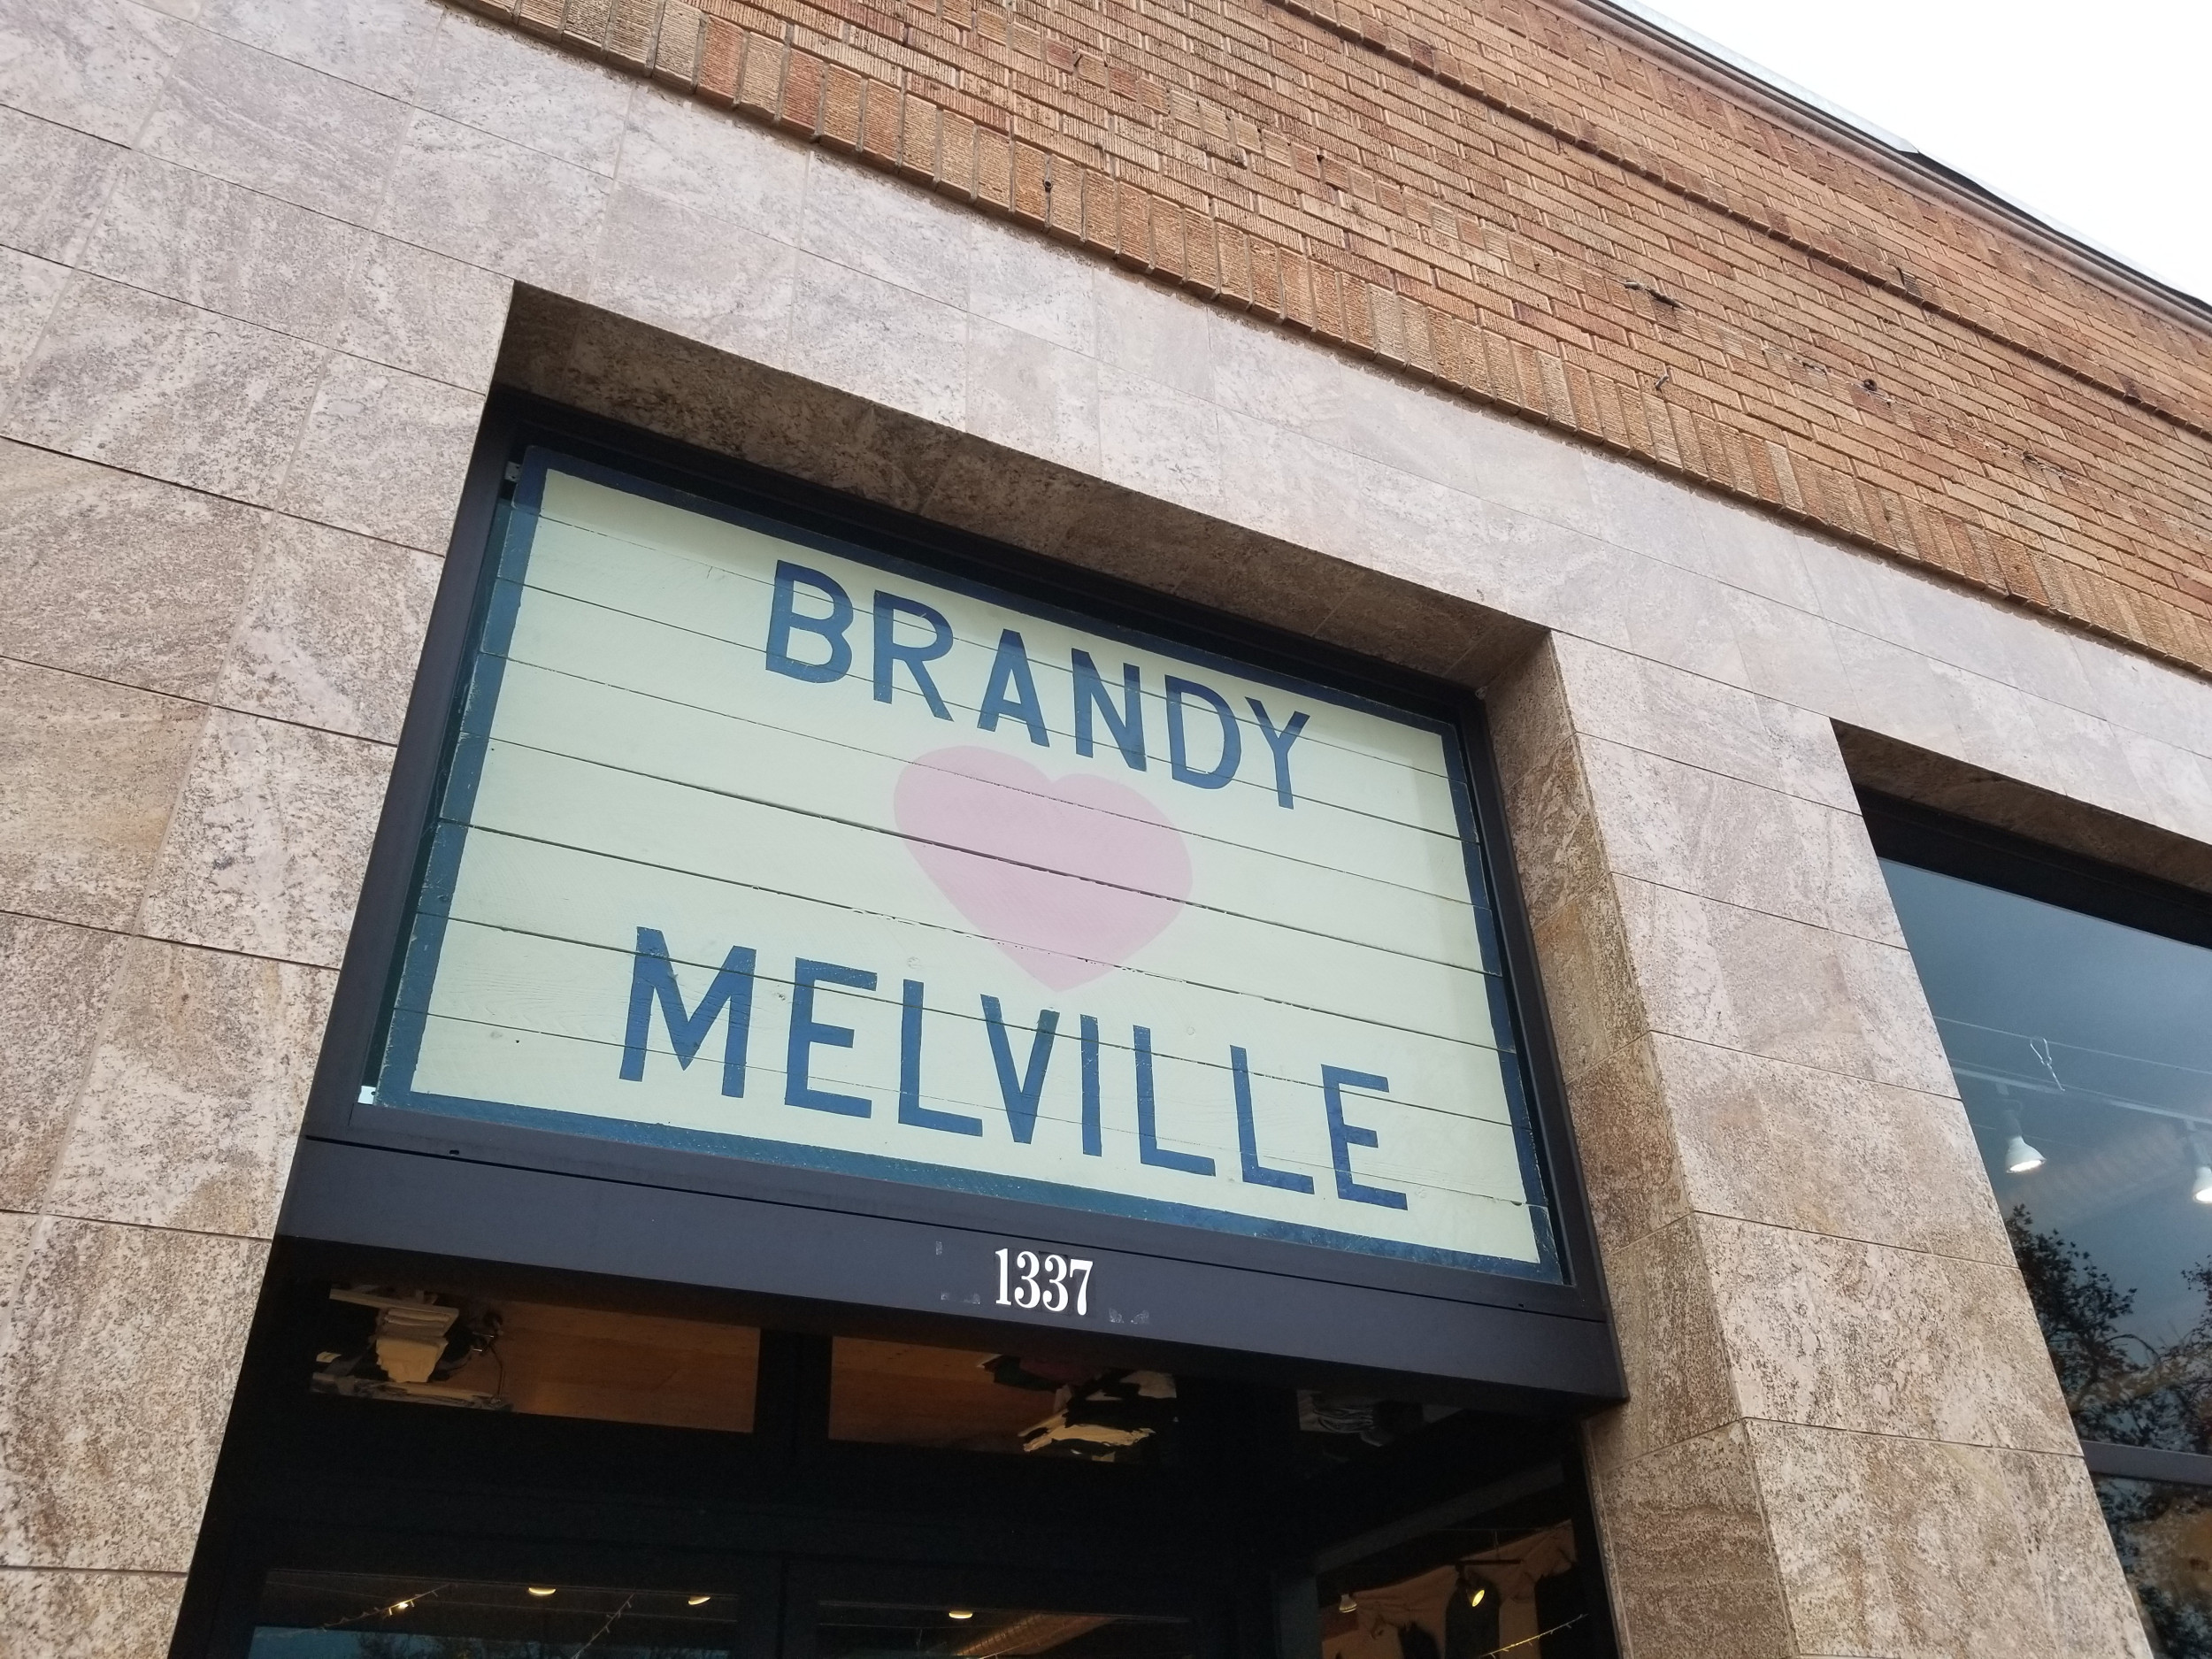 Casey Top  Brandy melville usa, Brandy melville style, Brandy melville  outfits